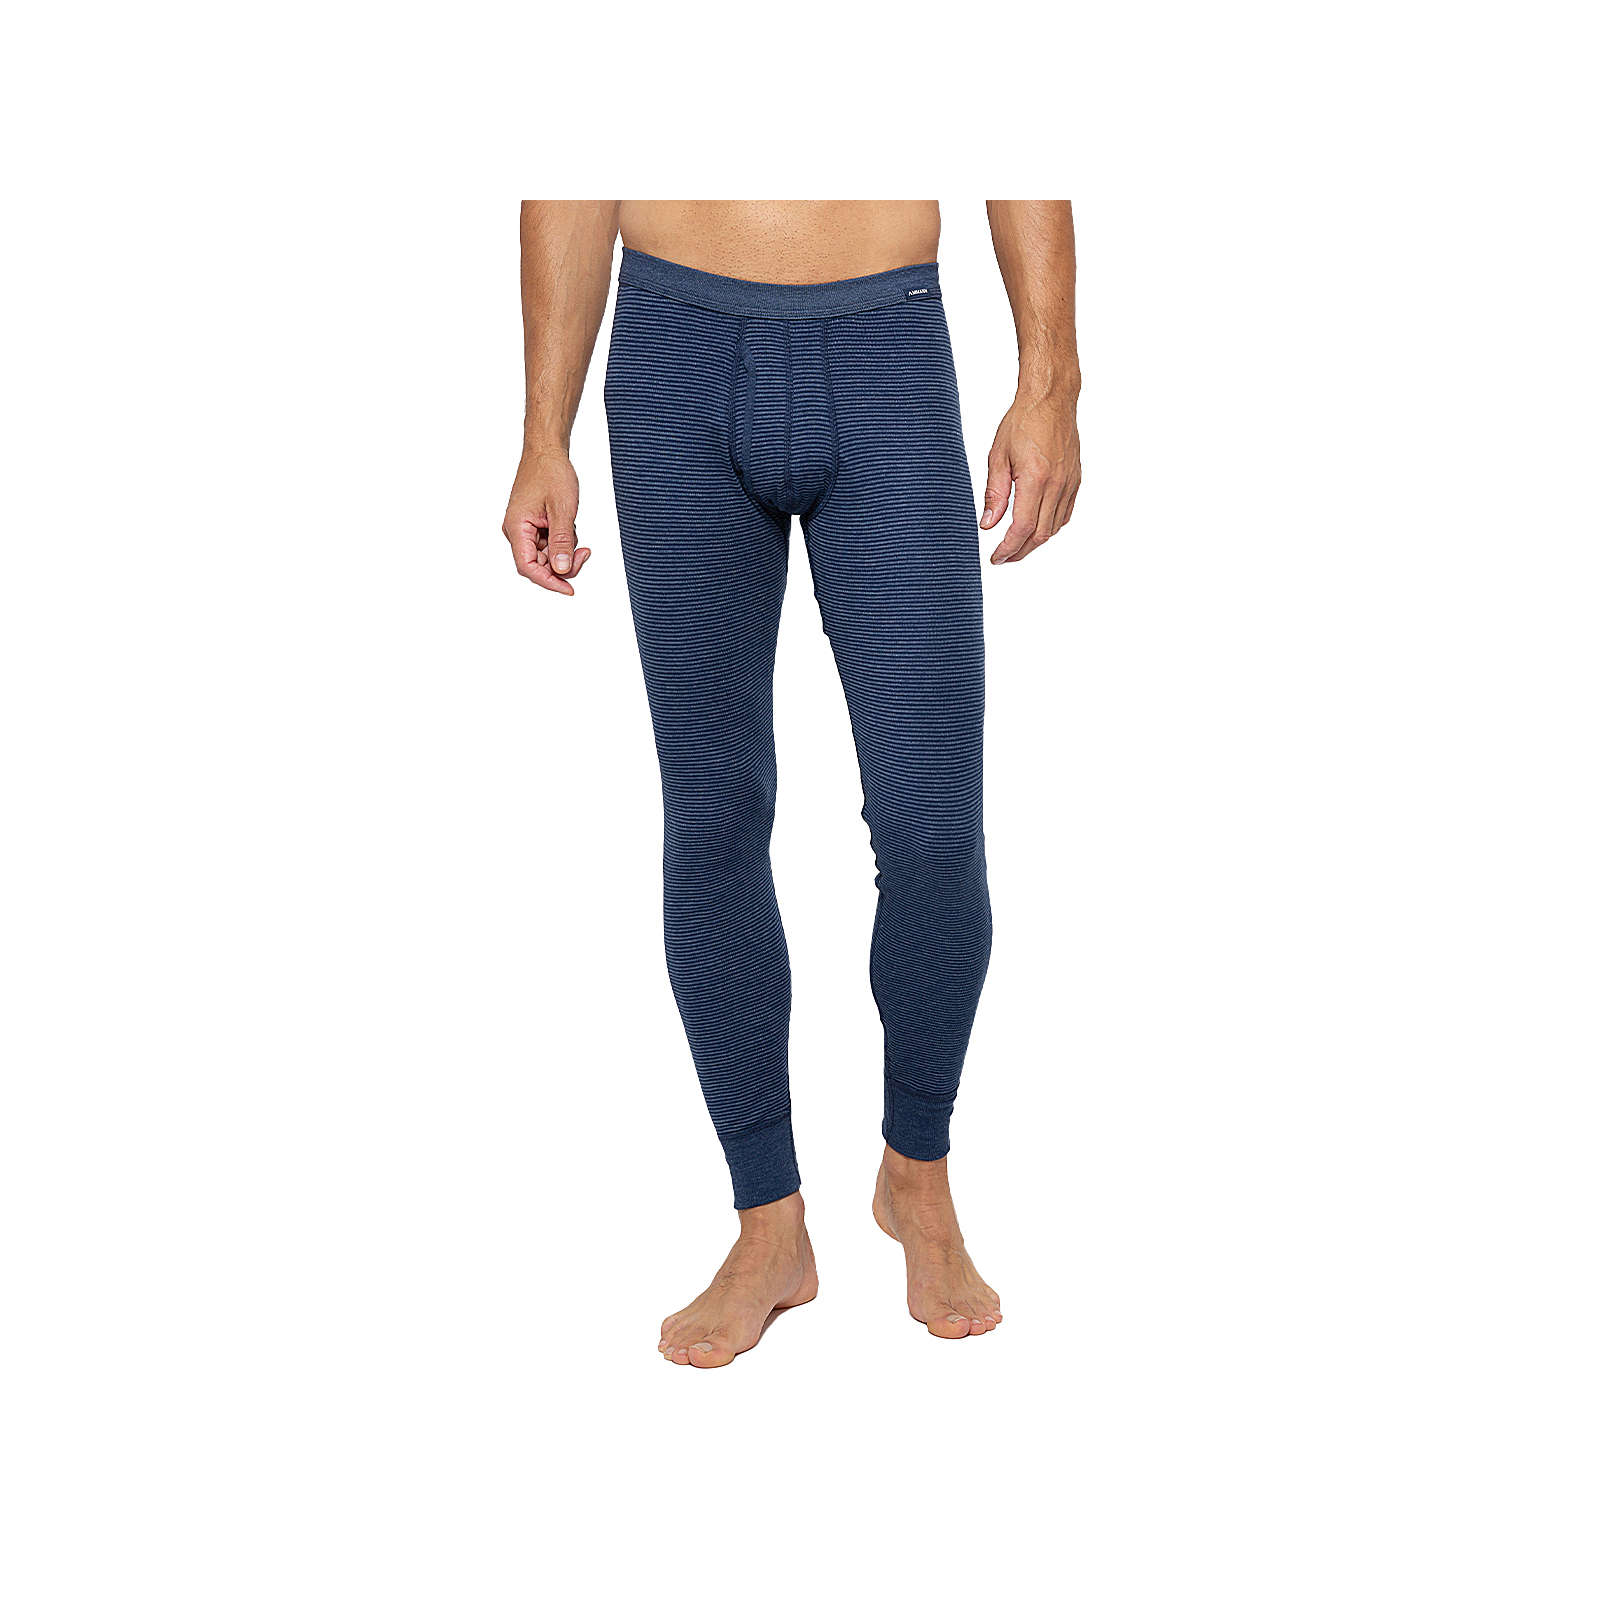 Image of AMMANN Unterhose lang mit Eingriff Jeans Lange Unterhosen blau Herren Gr. 62